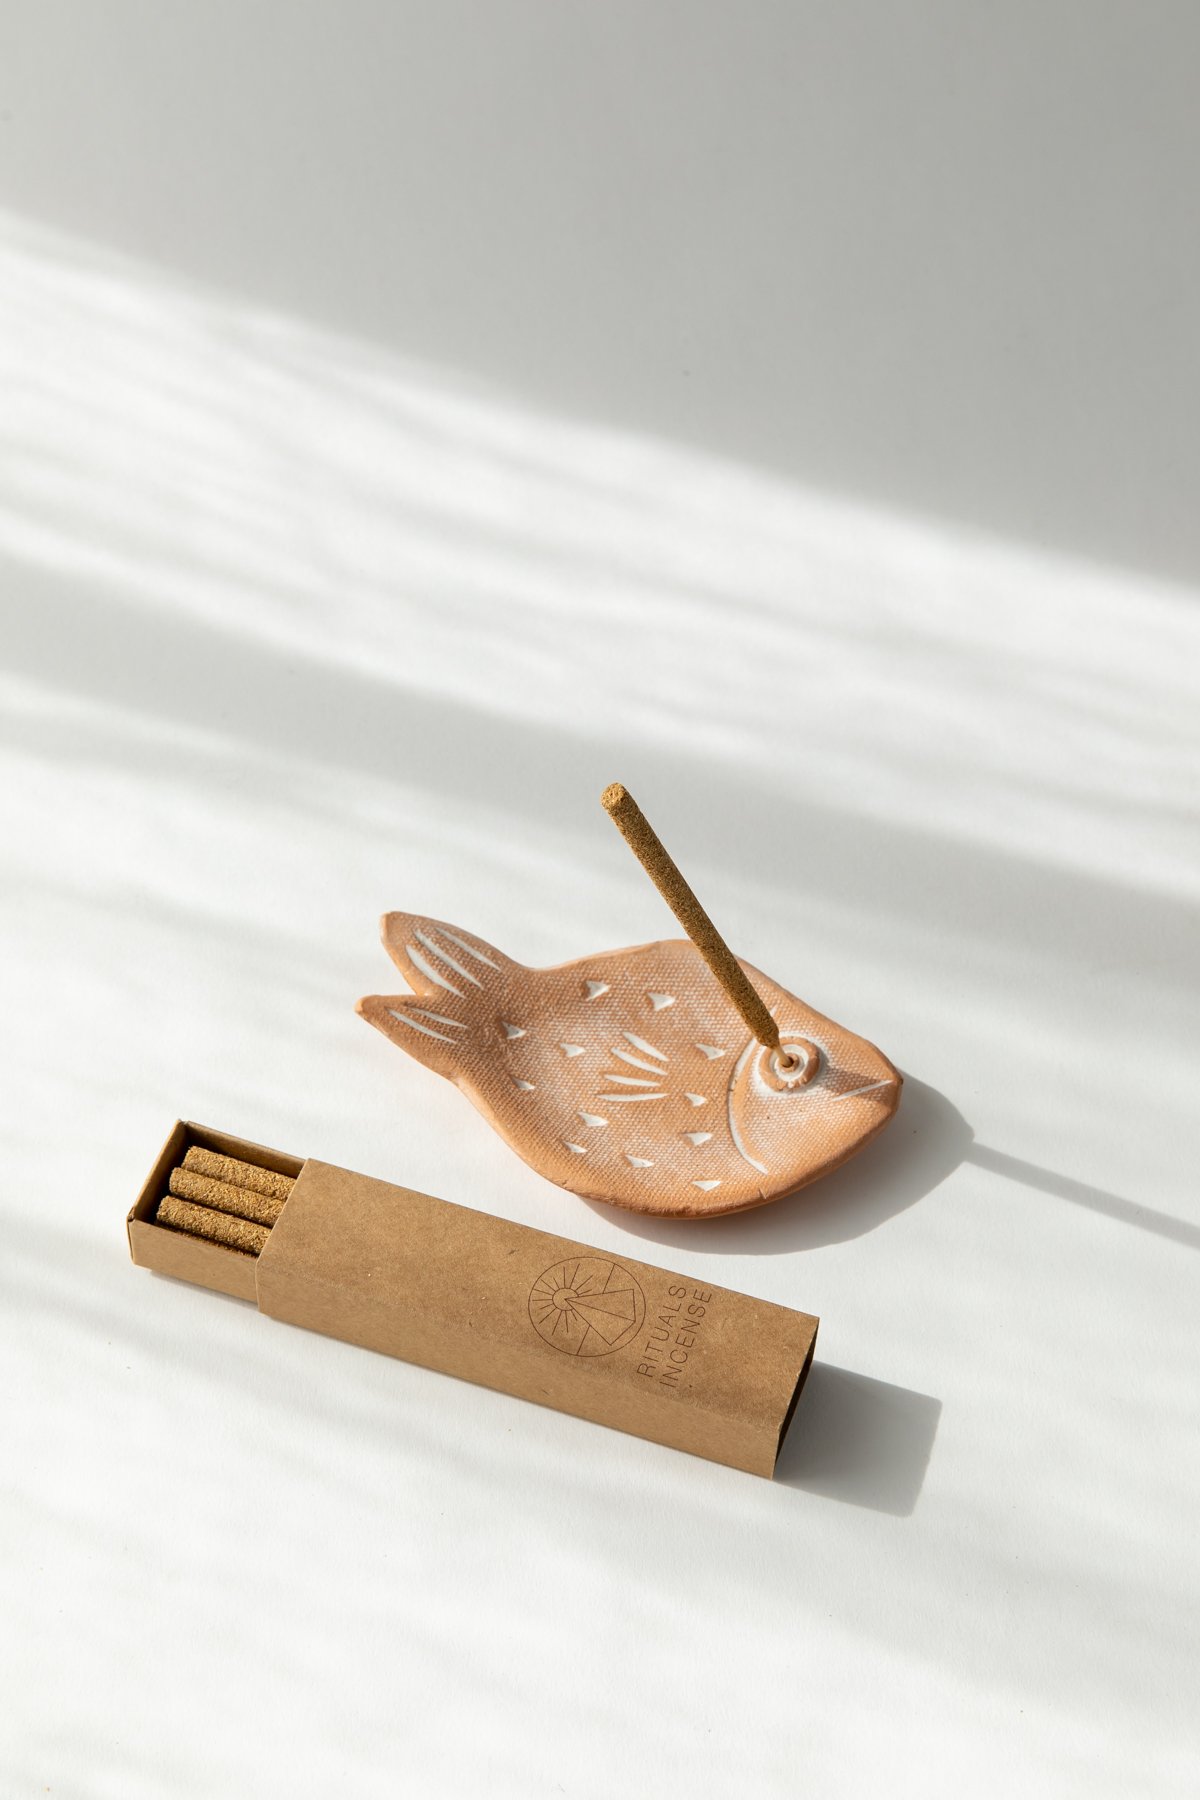 Knotwork LA — Mini Terracotta Fish Incense Holder